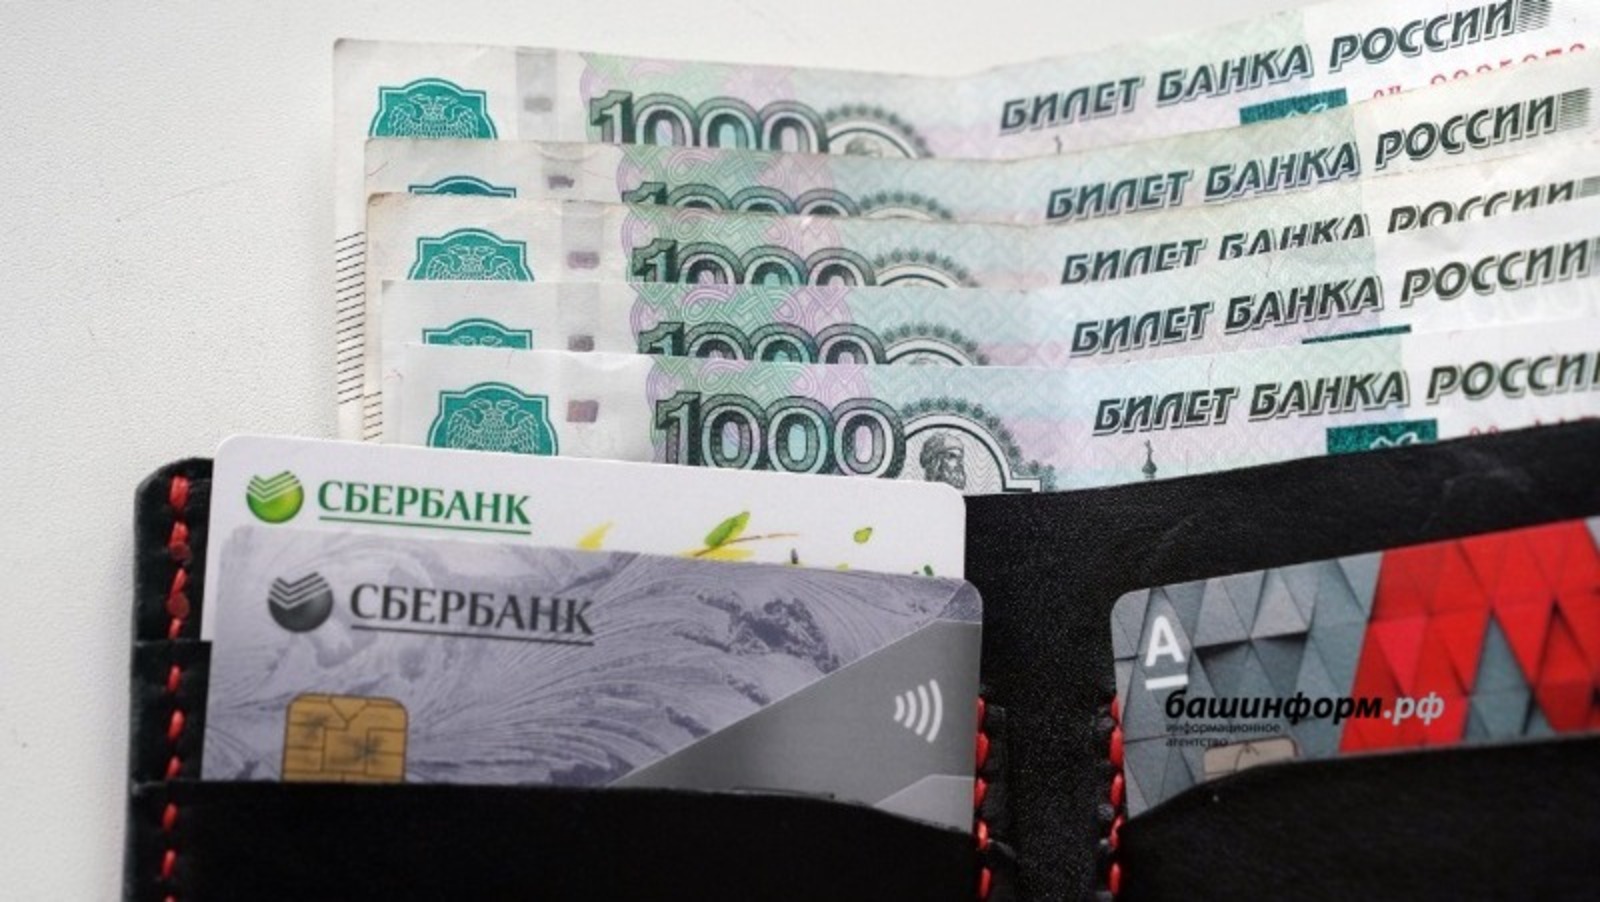 Башкирия возглавила рейтинг регионов Поволжья по средним зарплатным ожиданиям